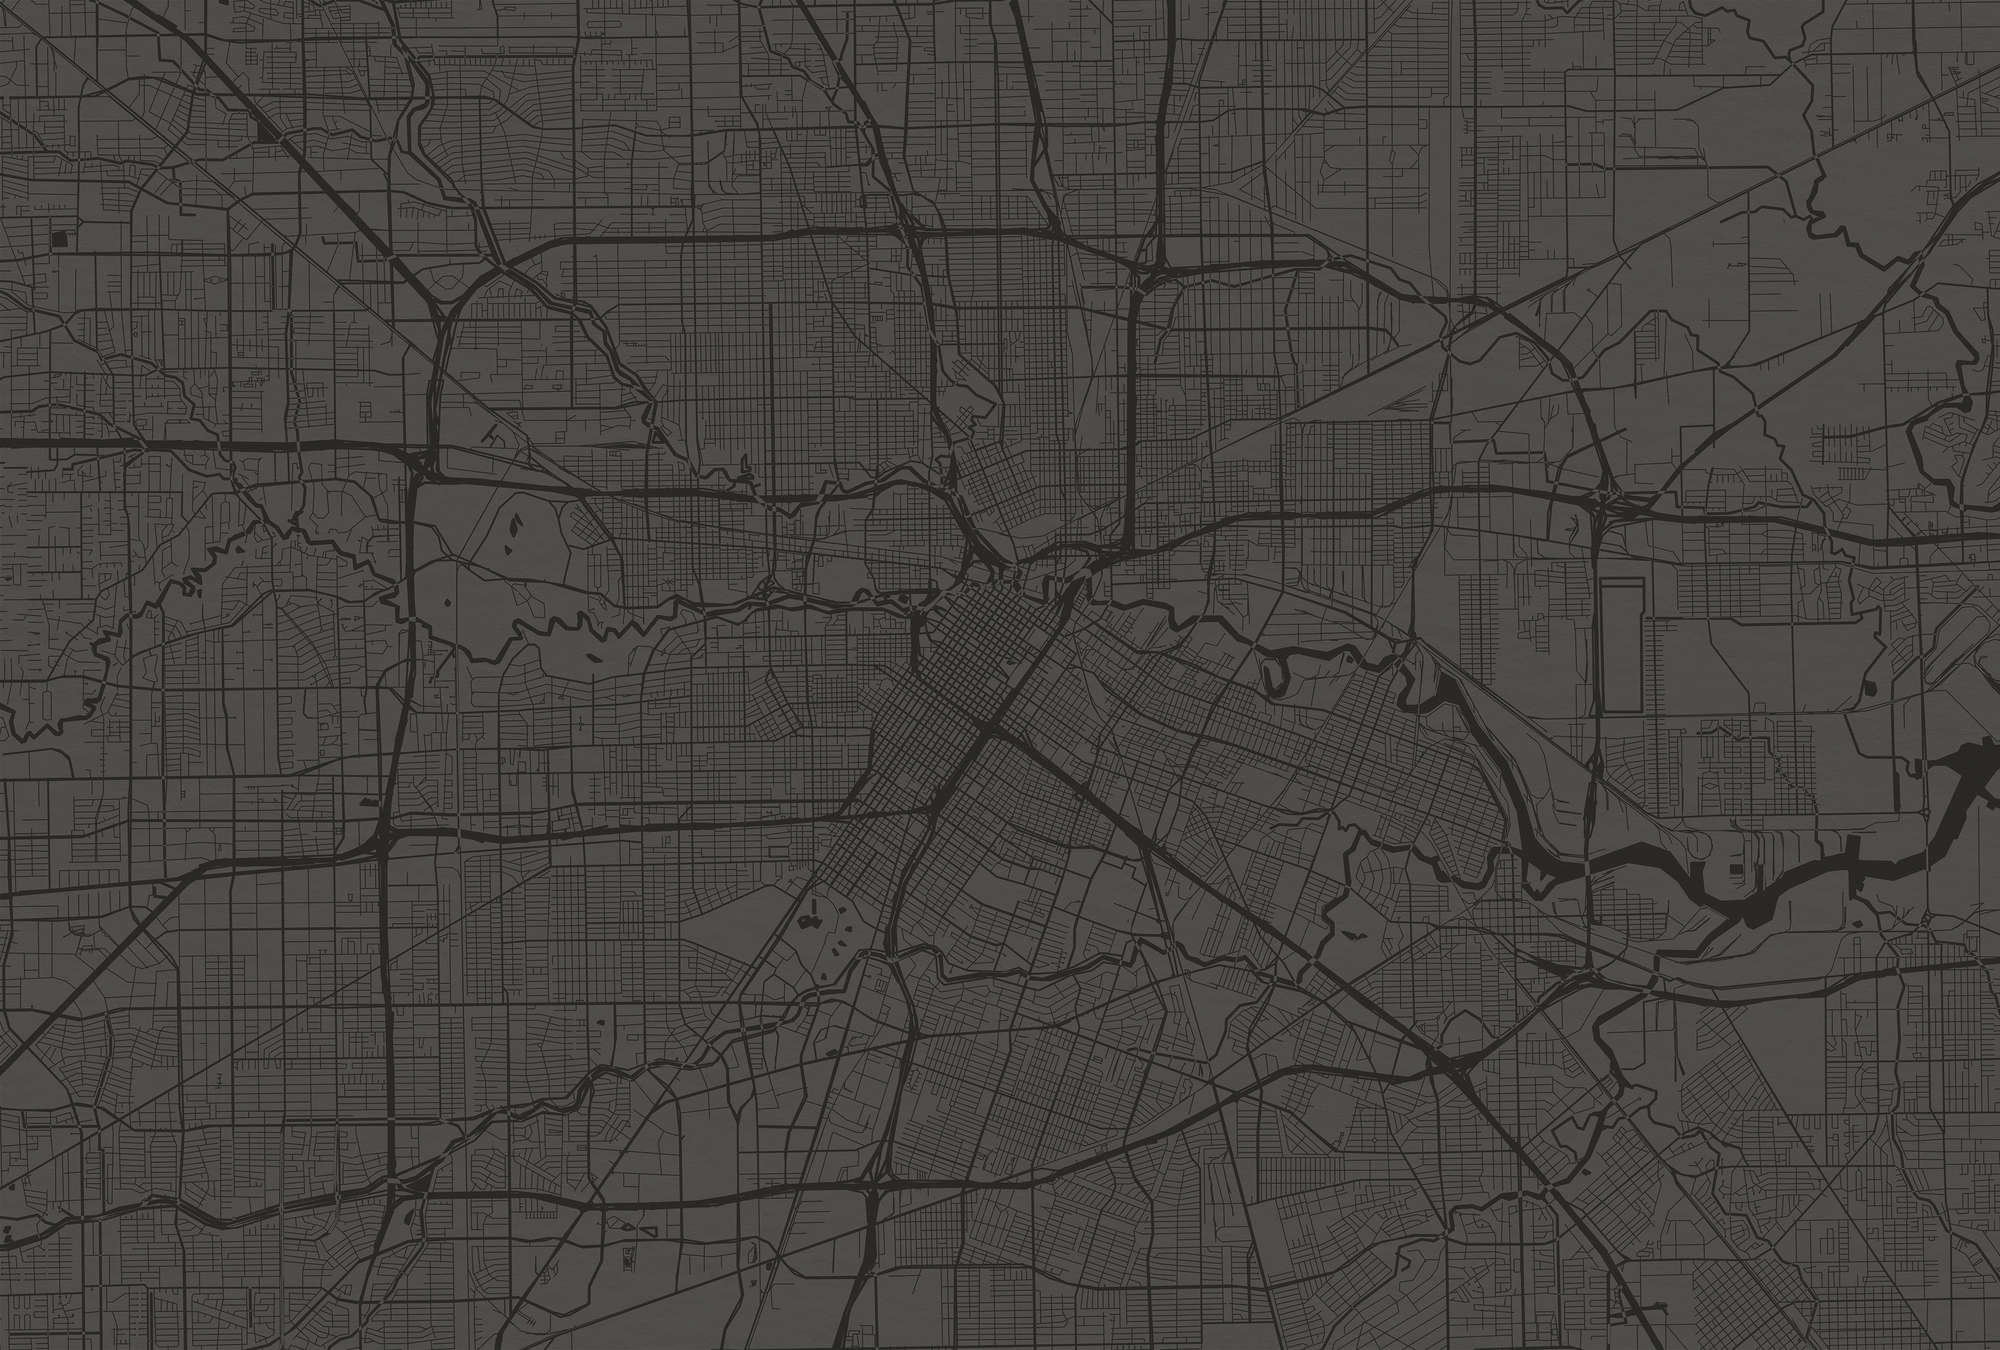             Fotomurali Mappa della città con tracciato stradale - Nero
        